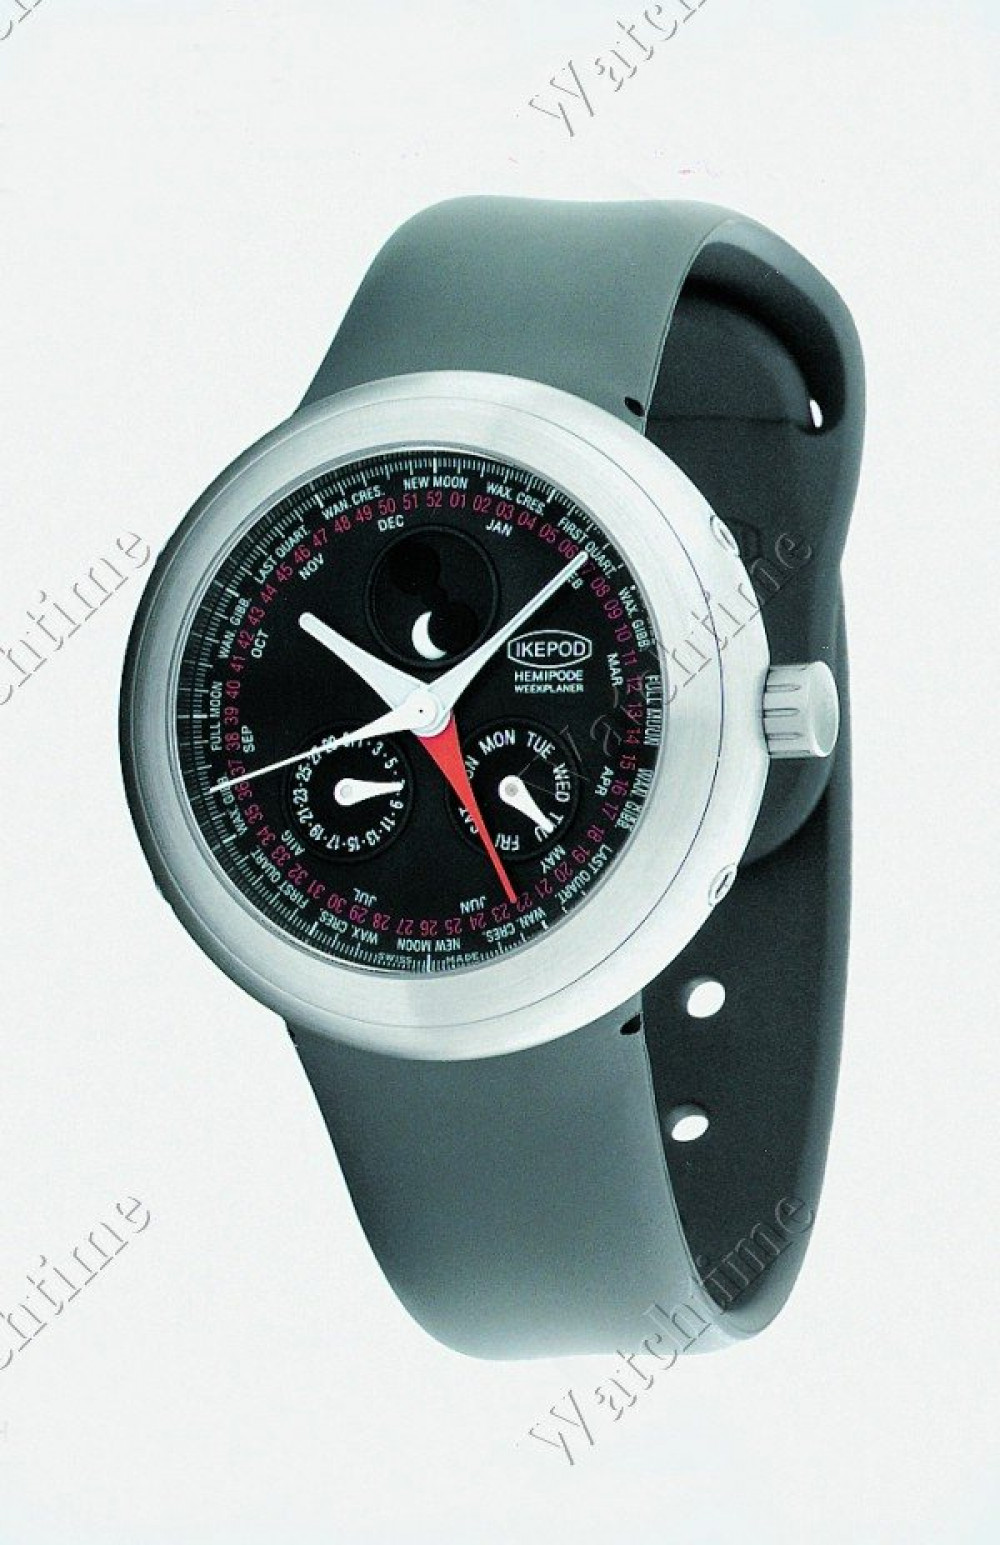 Zegarek firmy Ikepod, model Hemipode Weekplaner